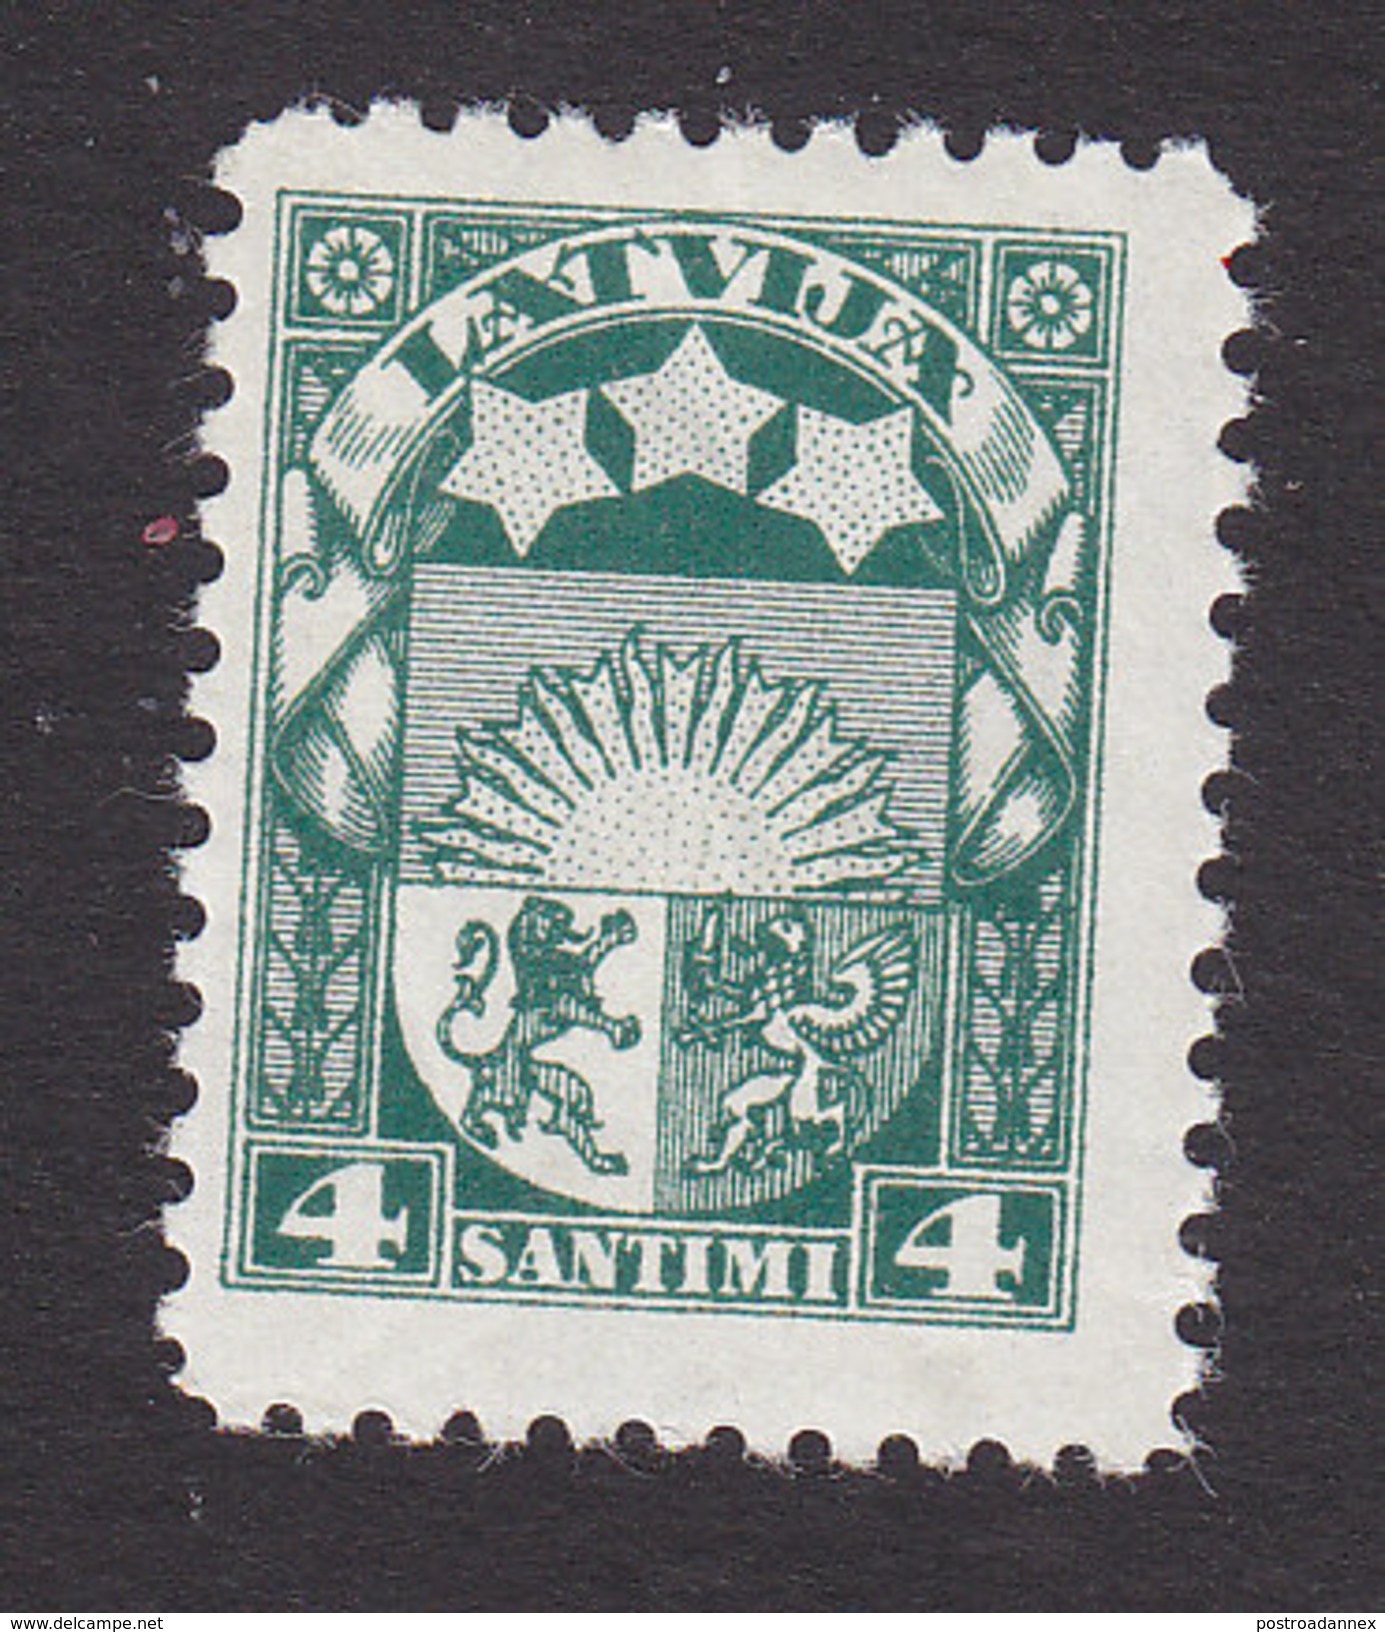 Latvia, Scott #139, Mint Hinged, Arms And Stars, Issued 1927 - Latvia